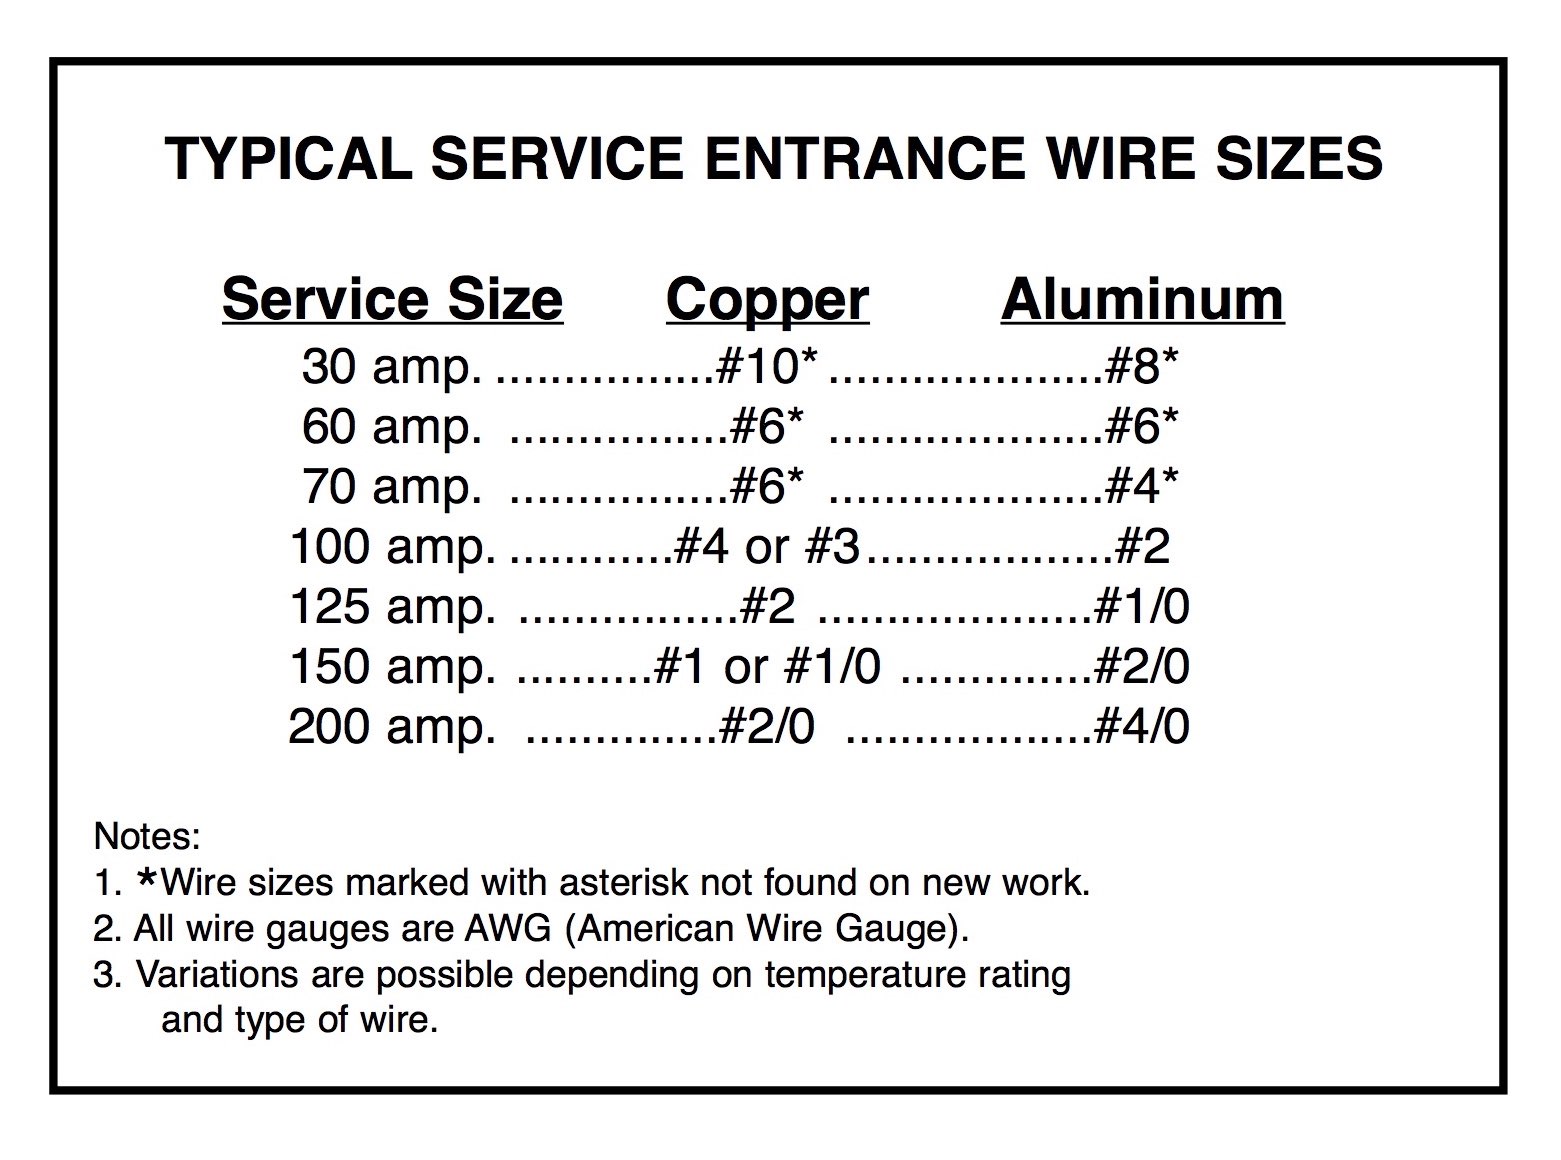 125 amp aluminum wire size | examquiz